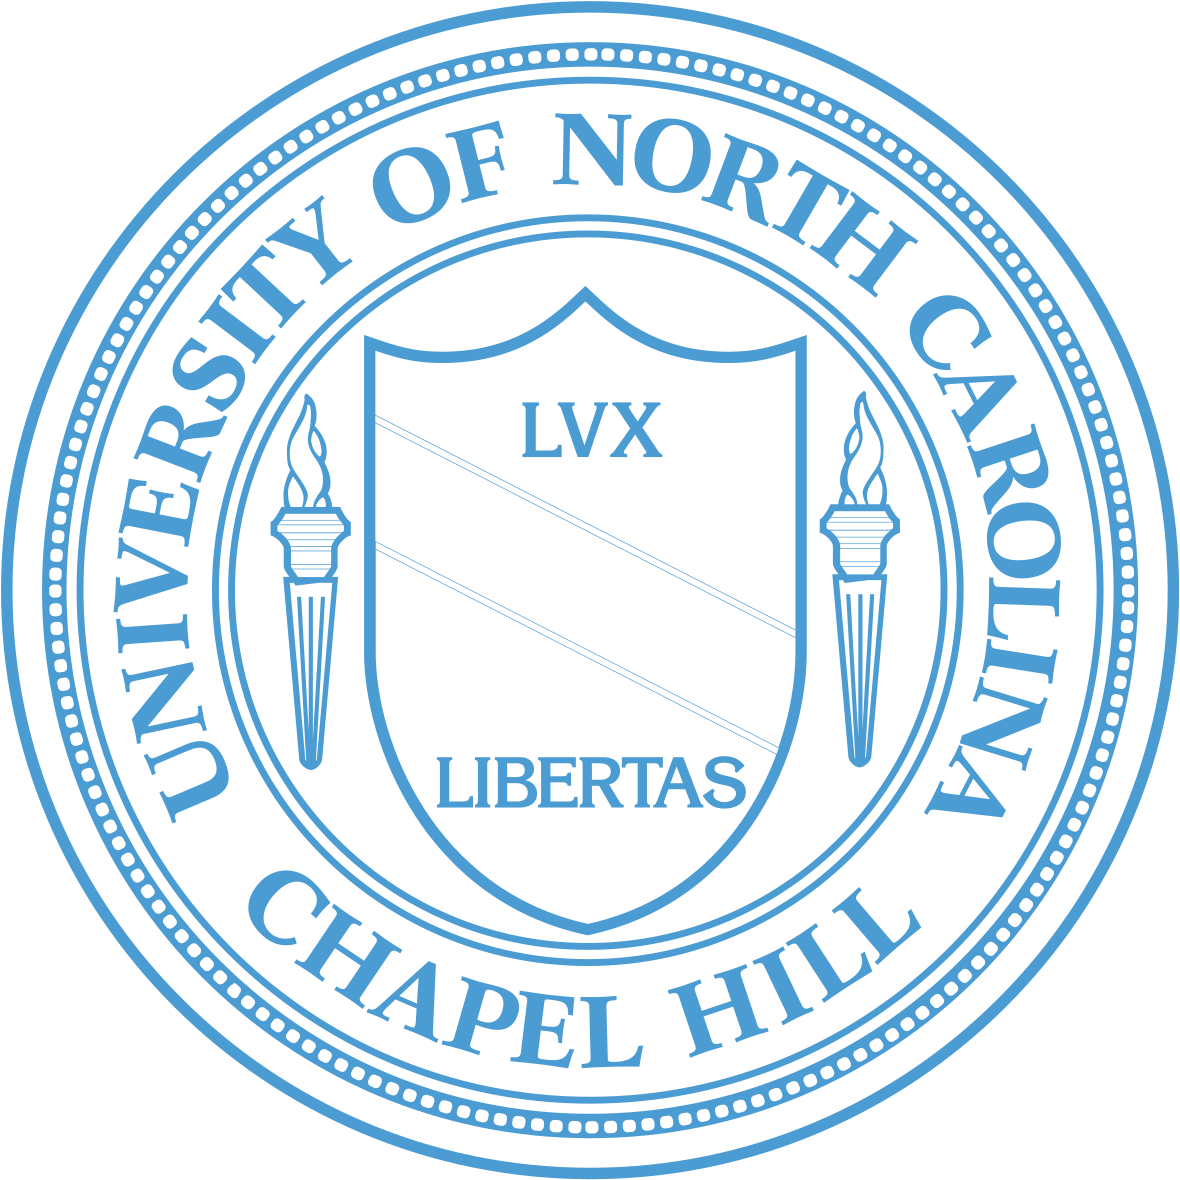 Hurricane Svg North Carolina - University Of North Carolina At Chapel Hill Clipart (1200x1200), Png Download